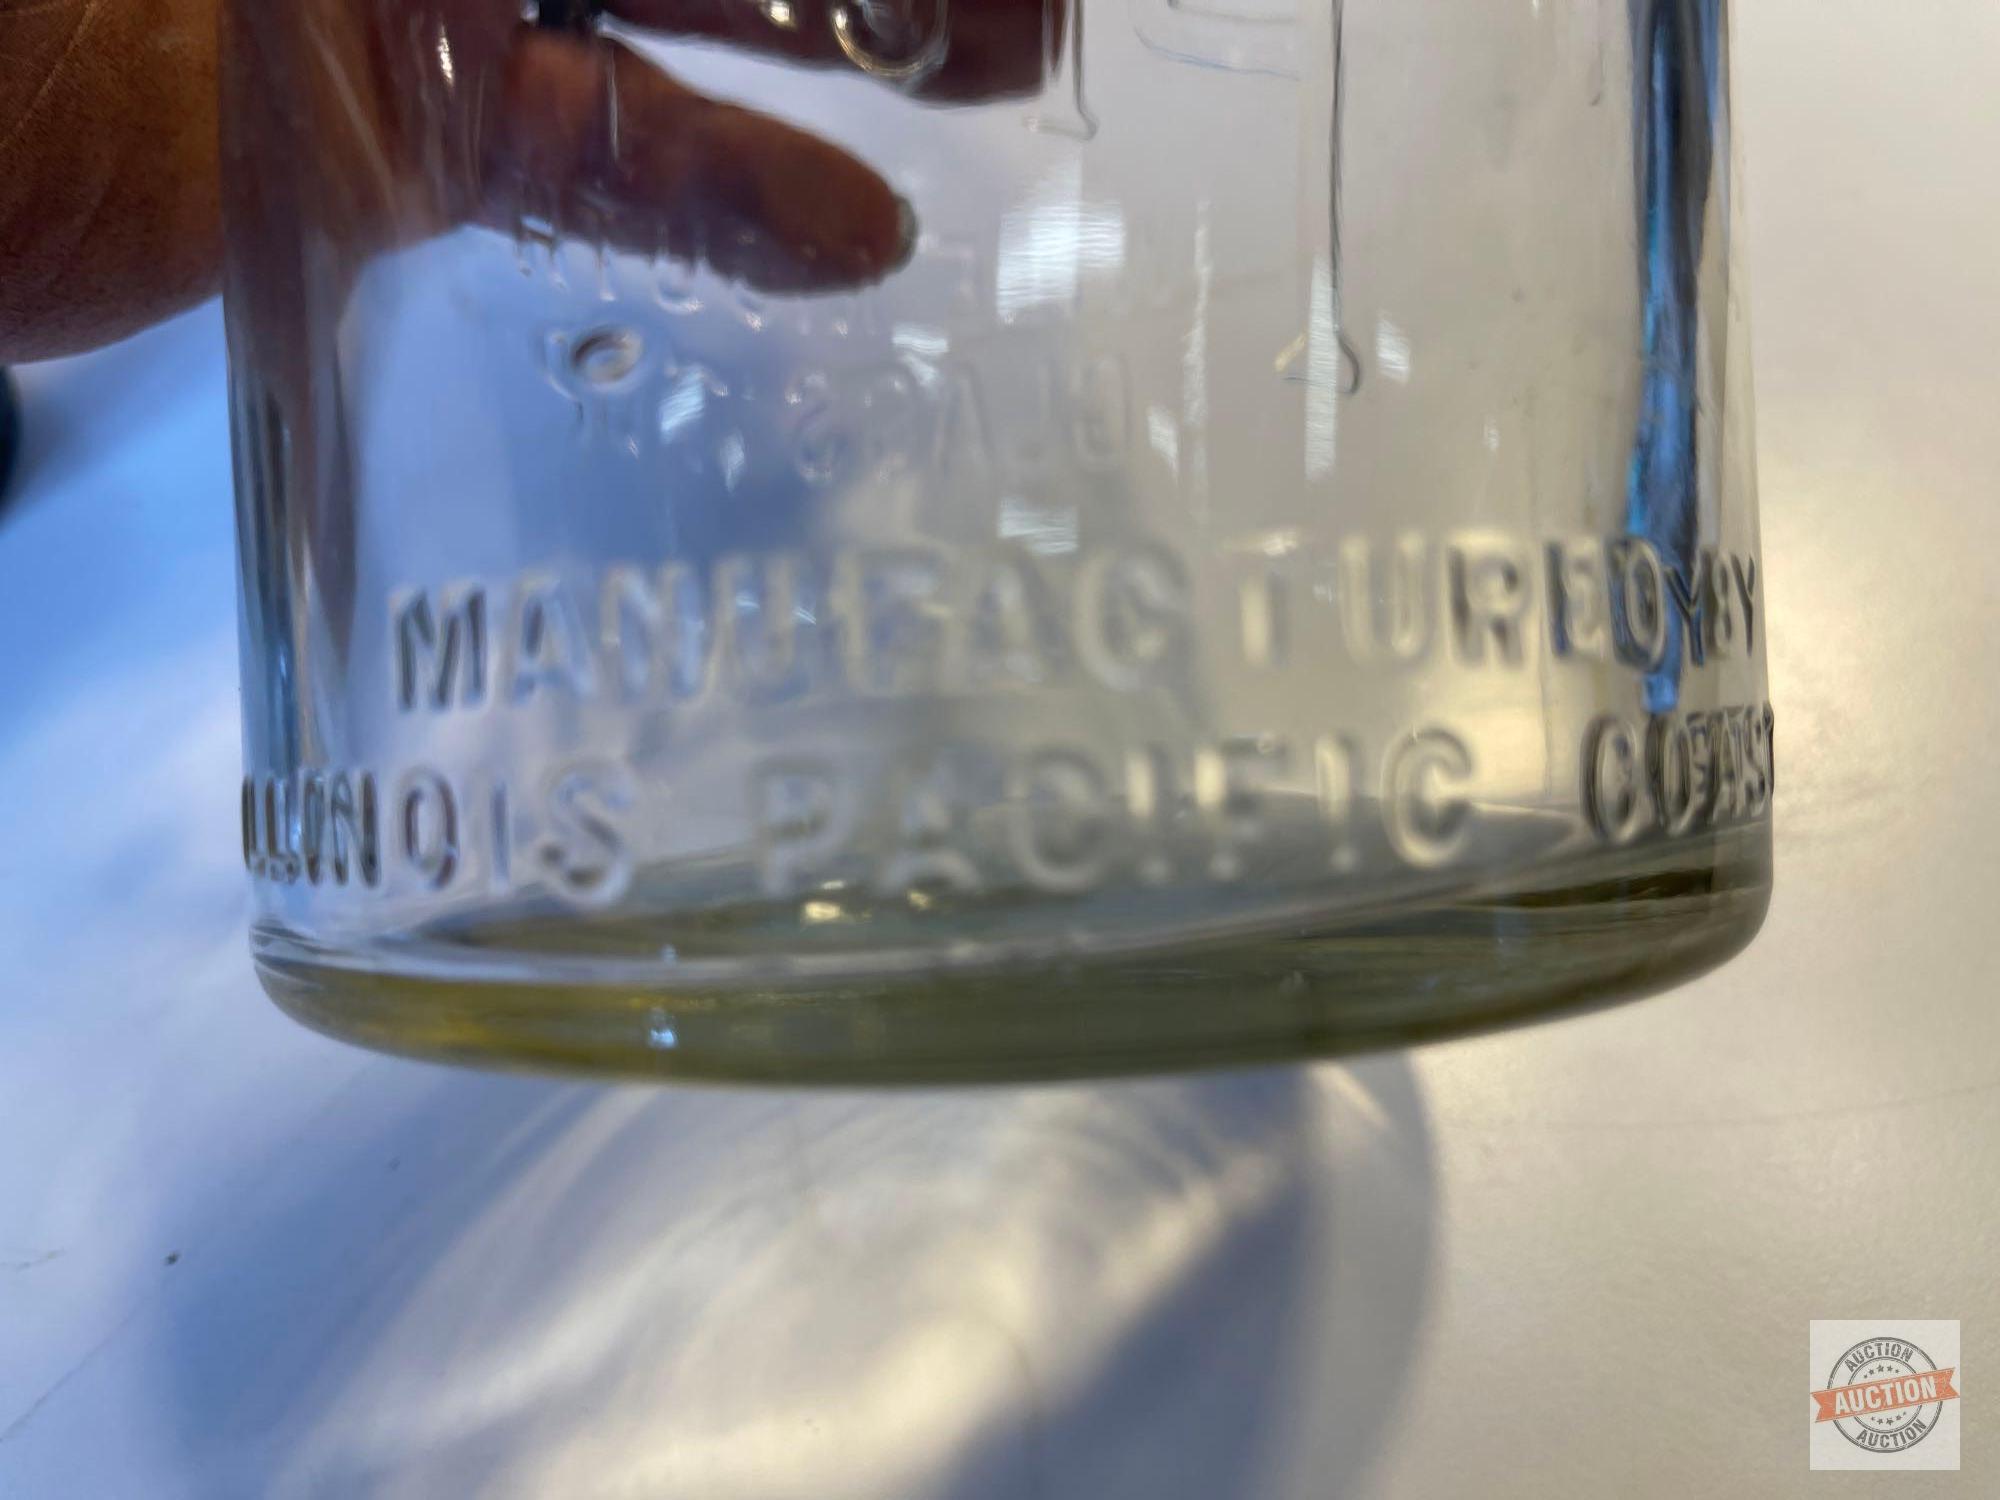 Vintage Canning jars - 3 with 16 vintage glass insert lids